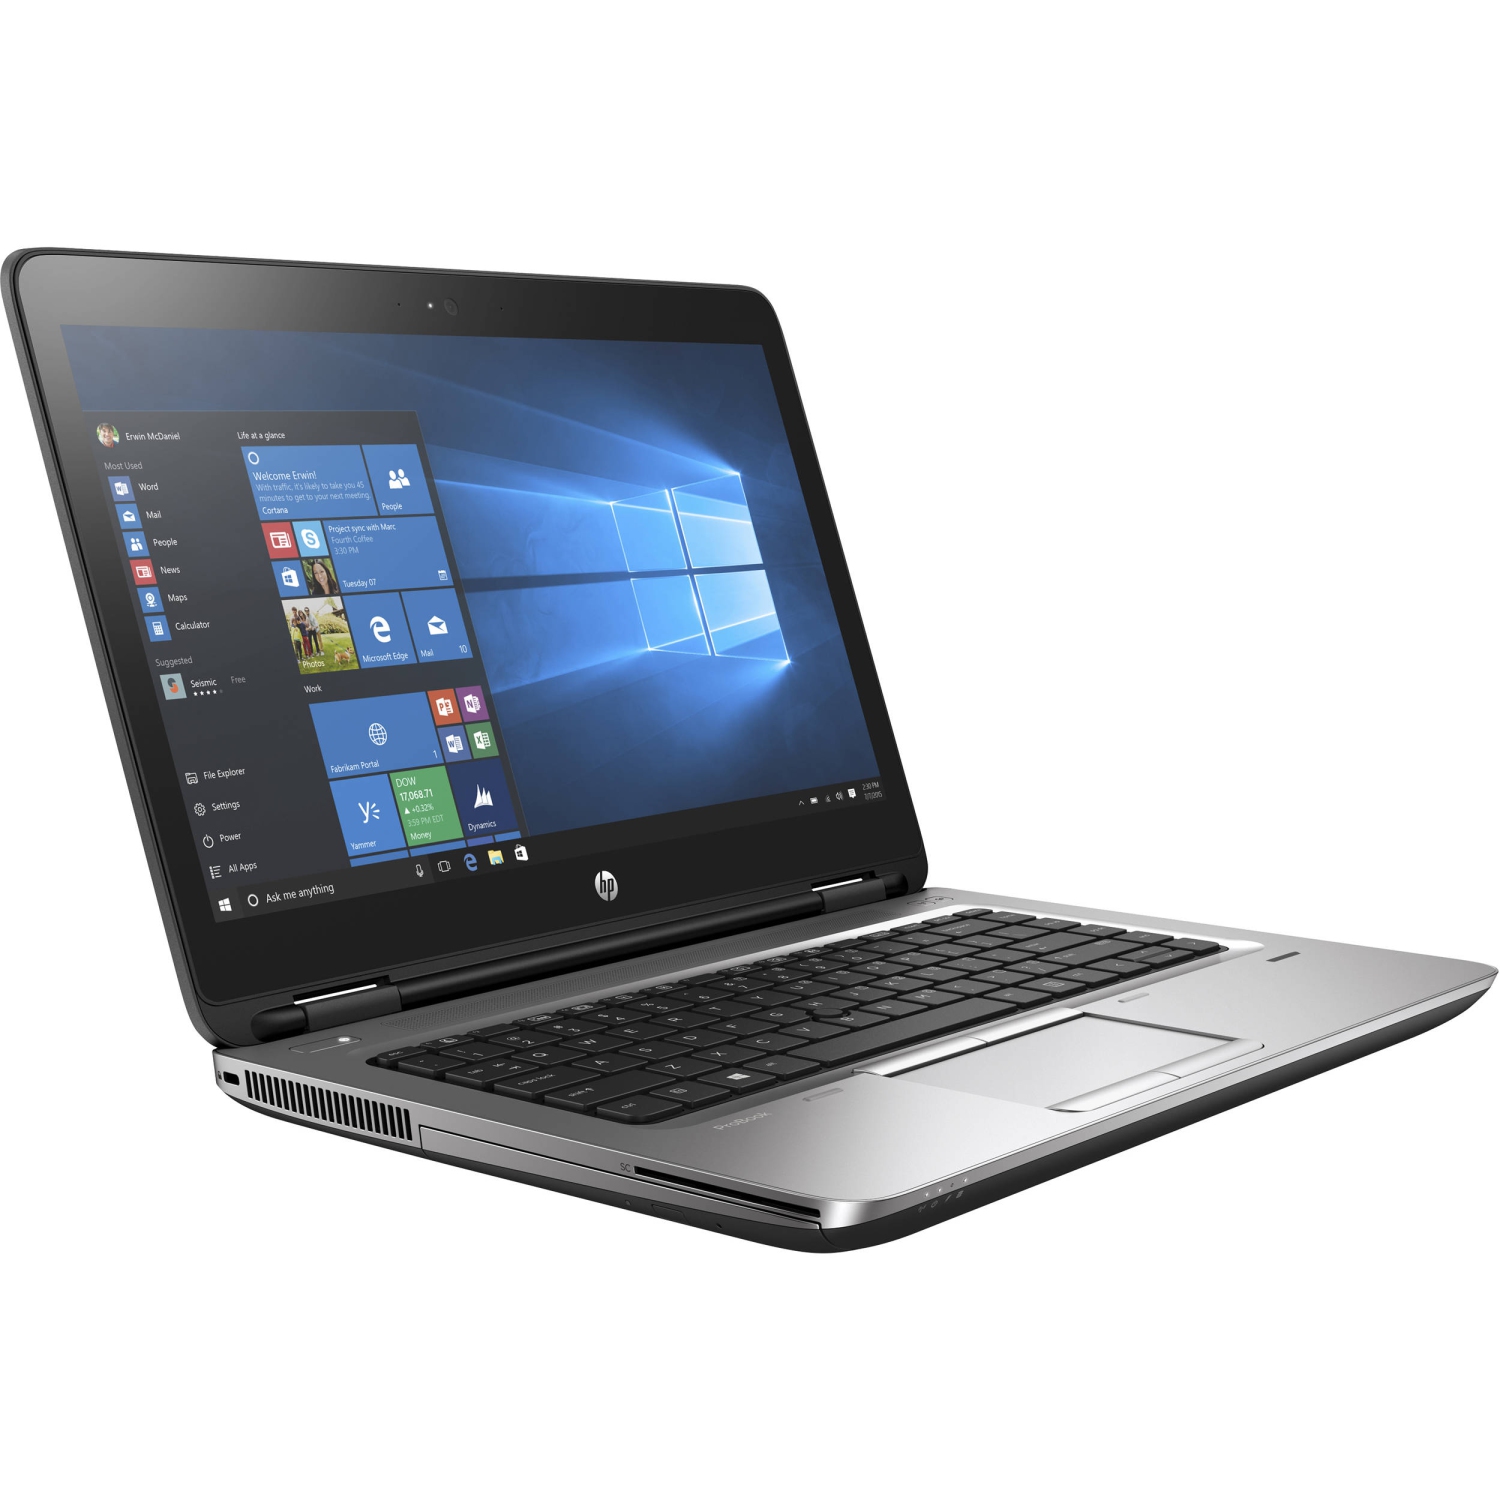 Refurbished (Good) - HP ProBook 640 G3 14" Laptop, Core i5-7300U, 8 GB DDR4, 256 GB SSD, Windows 10 Professional